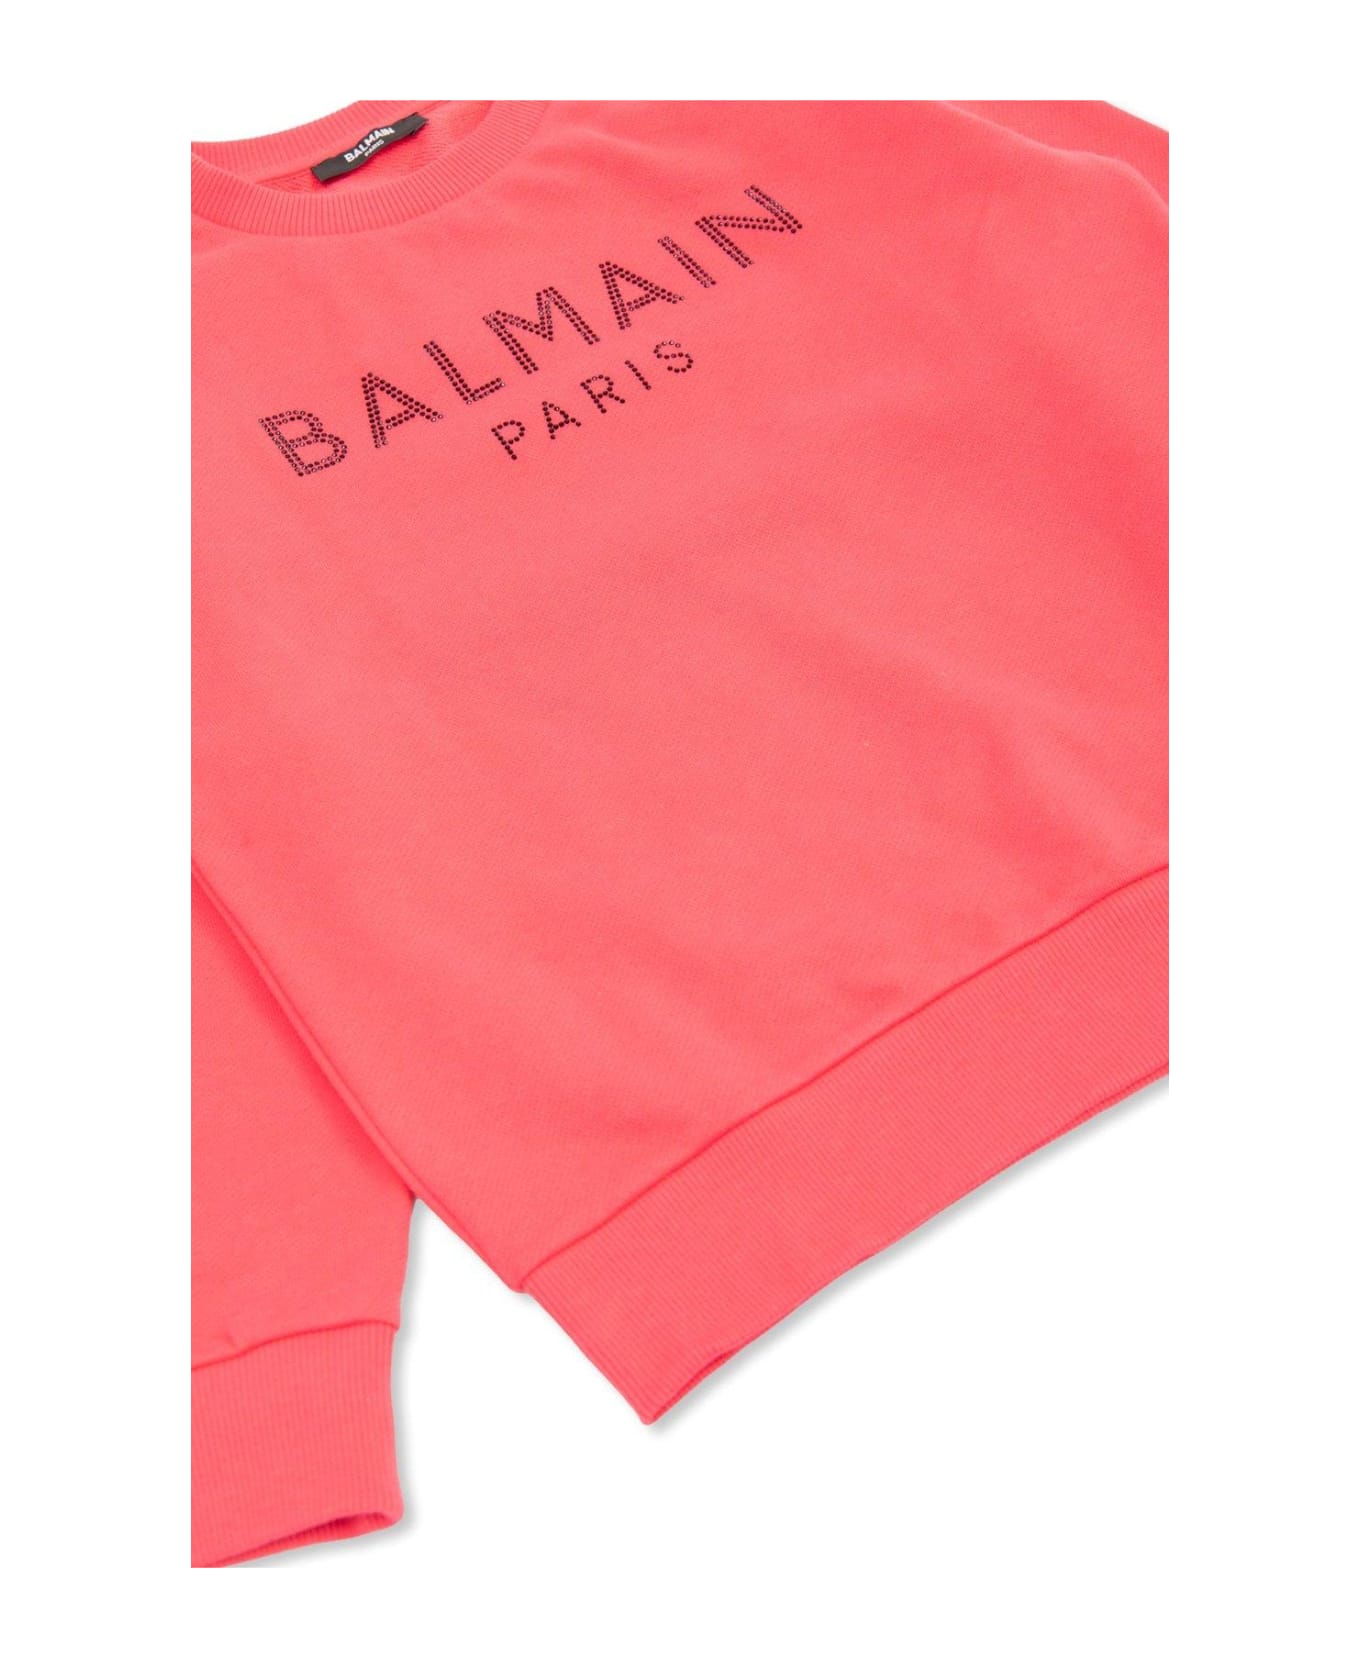 Balmain Logo Embellished Crewneck Sweatshirt